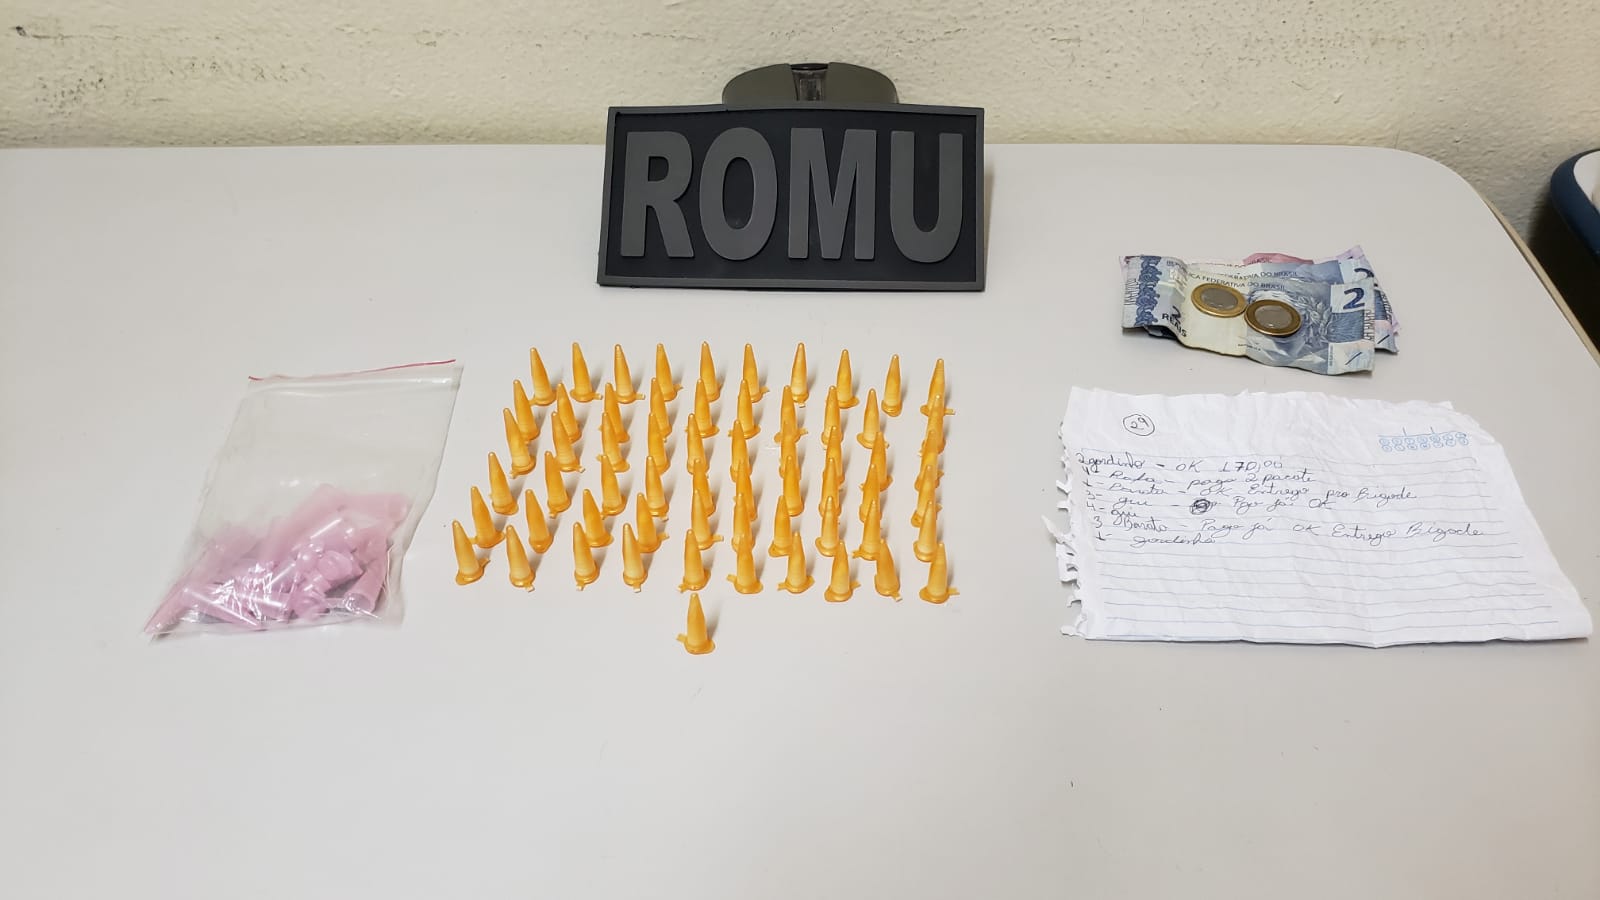 ROMU de Itararé (SP) apreende mais de 60 porções de cocaína e dinheiro na Vila Novo Horizonte